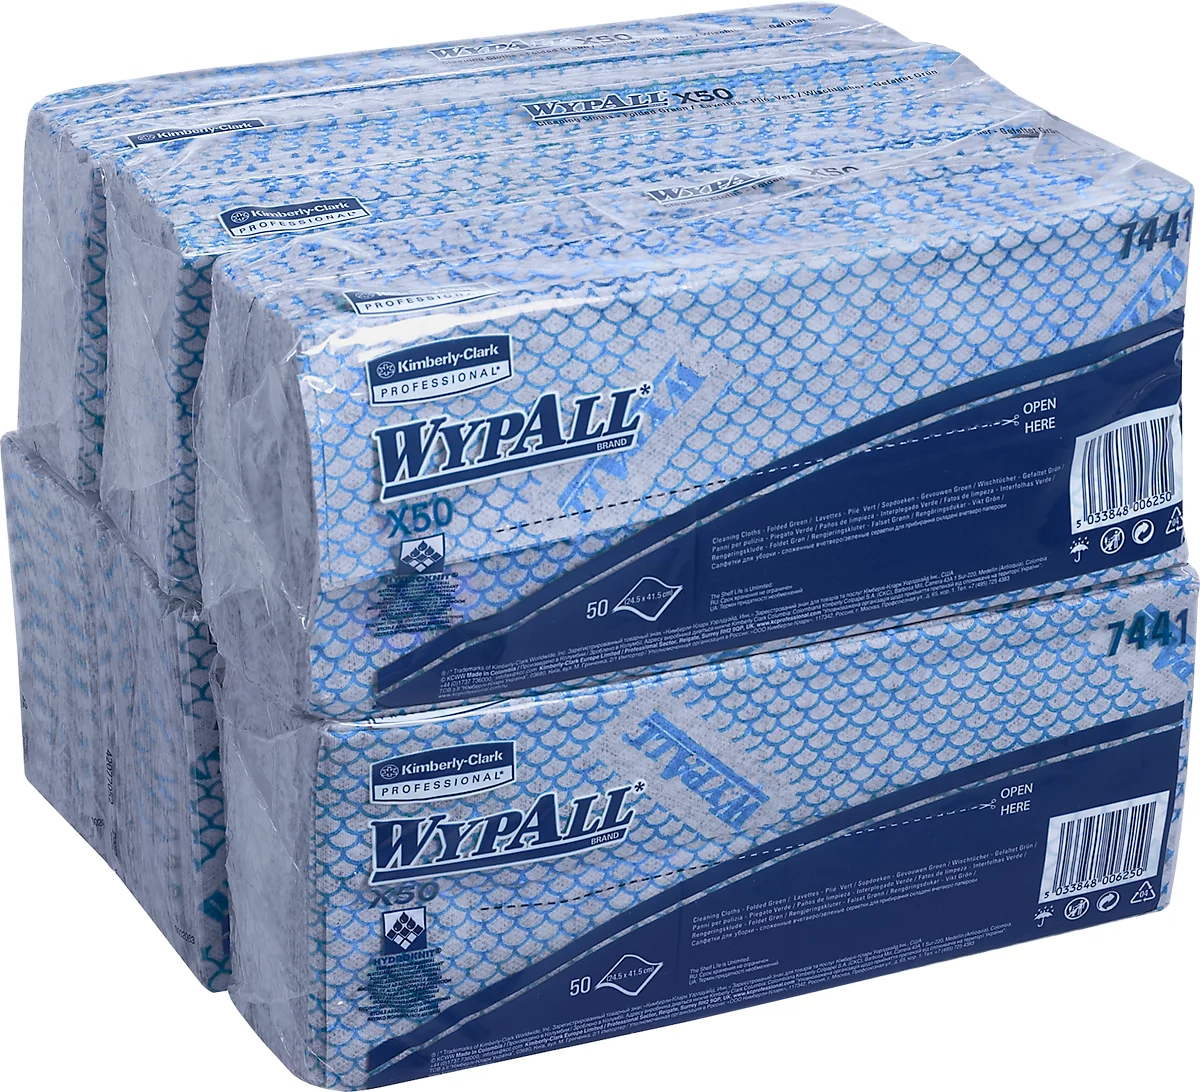 Wischtücher WypAll® X50, B 245 x L 416 mm, Interfold, lebensmittelgeeignet, 6 x 50 Stück, blau